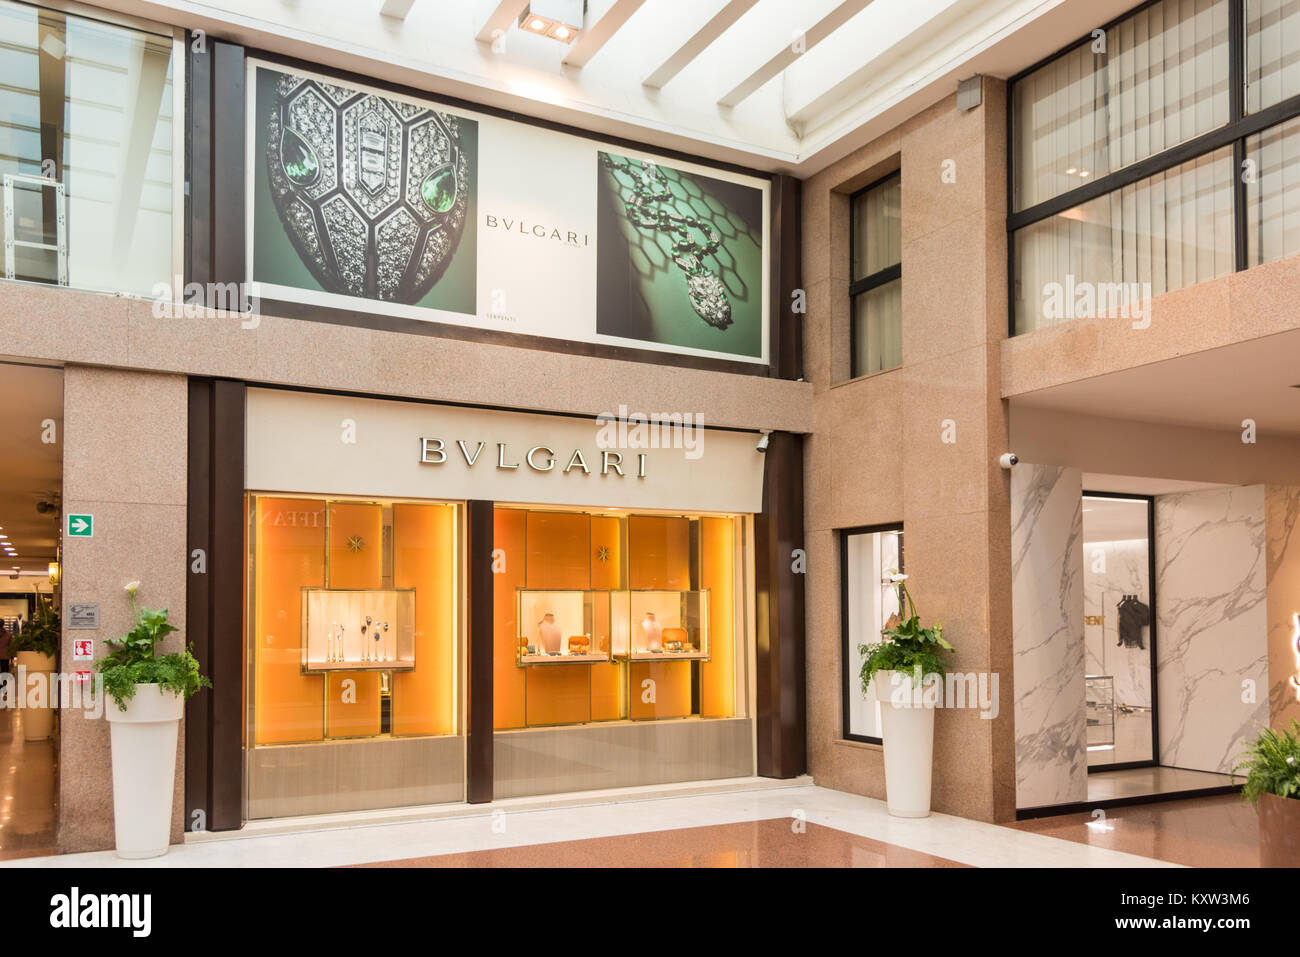 La boutique de bijoux Bulgari Bvlgari ou en brillant, centre commercial au toit de verre pleine de magasins de mode designer haut de gamme. Banque D'Images